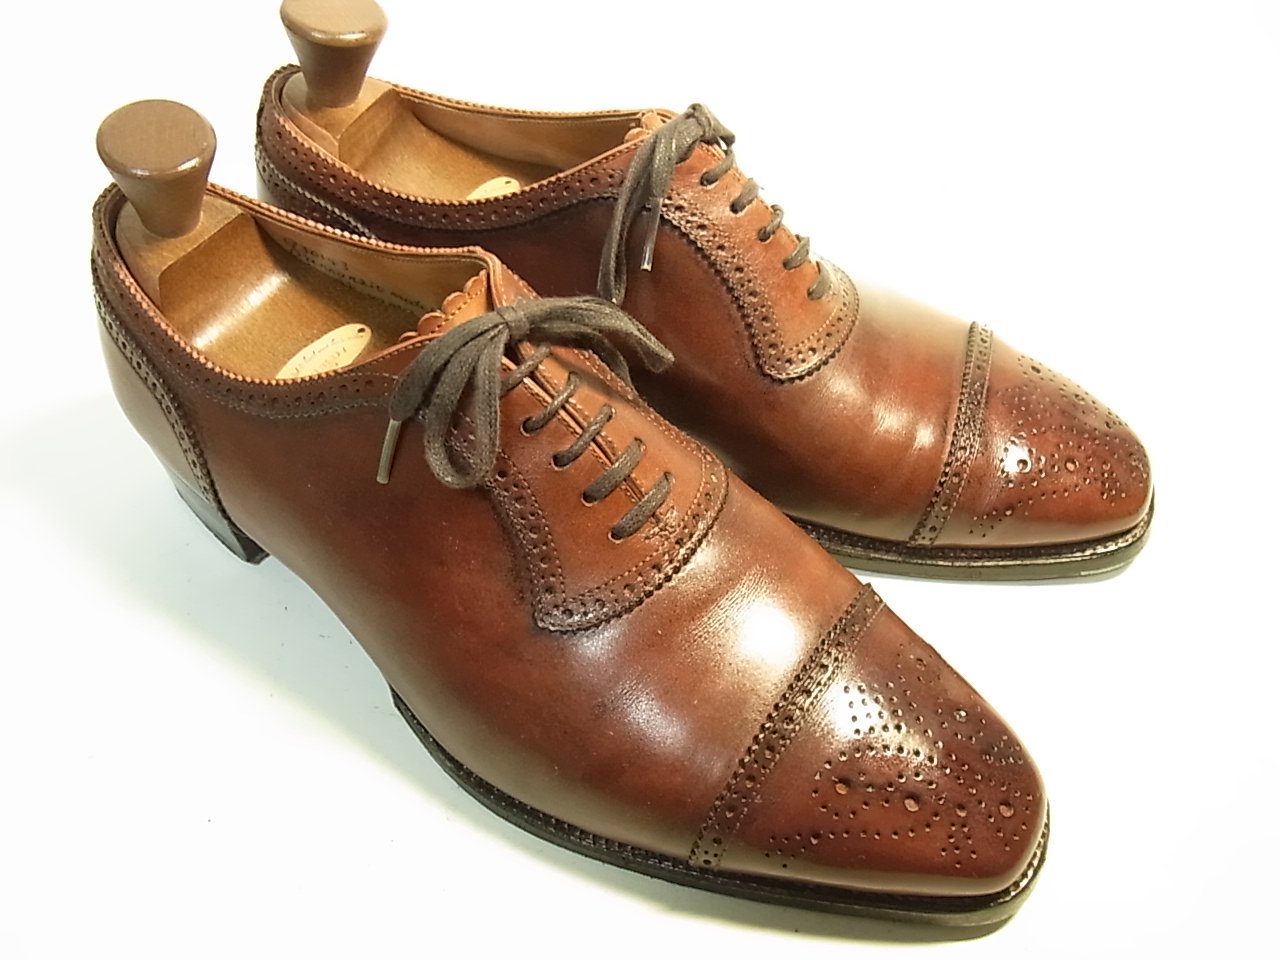 172 ギルド オブ クラフツ ビスポーク シューツリー付き Shoesaholic 公式 高級靴の買取委託と中古usedの通販サイト